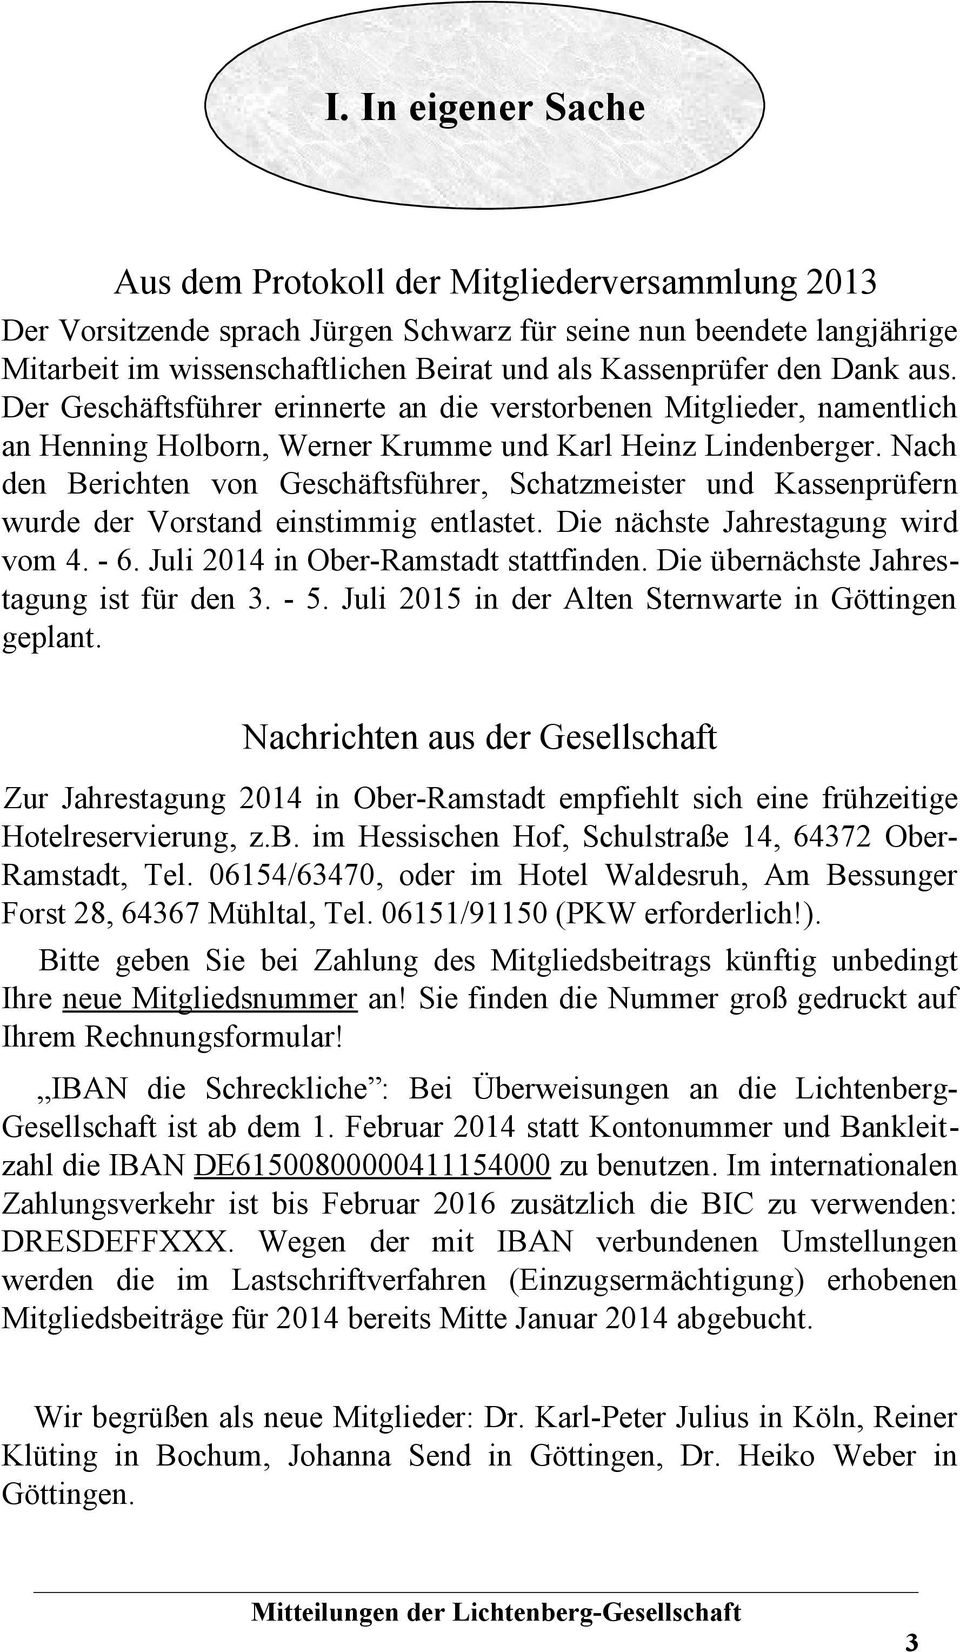 Nach den Berichten von Geschäftsführer, Schatzmeister und Kassenprüfern wurde der Vorstand einstimmig entlastet. Die nächste Jahrestagung wird vom 4. - 6. Juli 2014 in Ober-Ramstadt stattfinden.